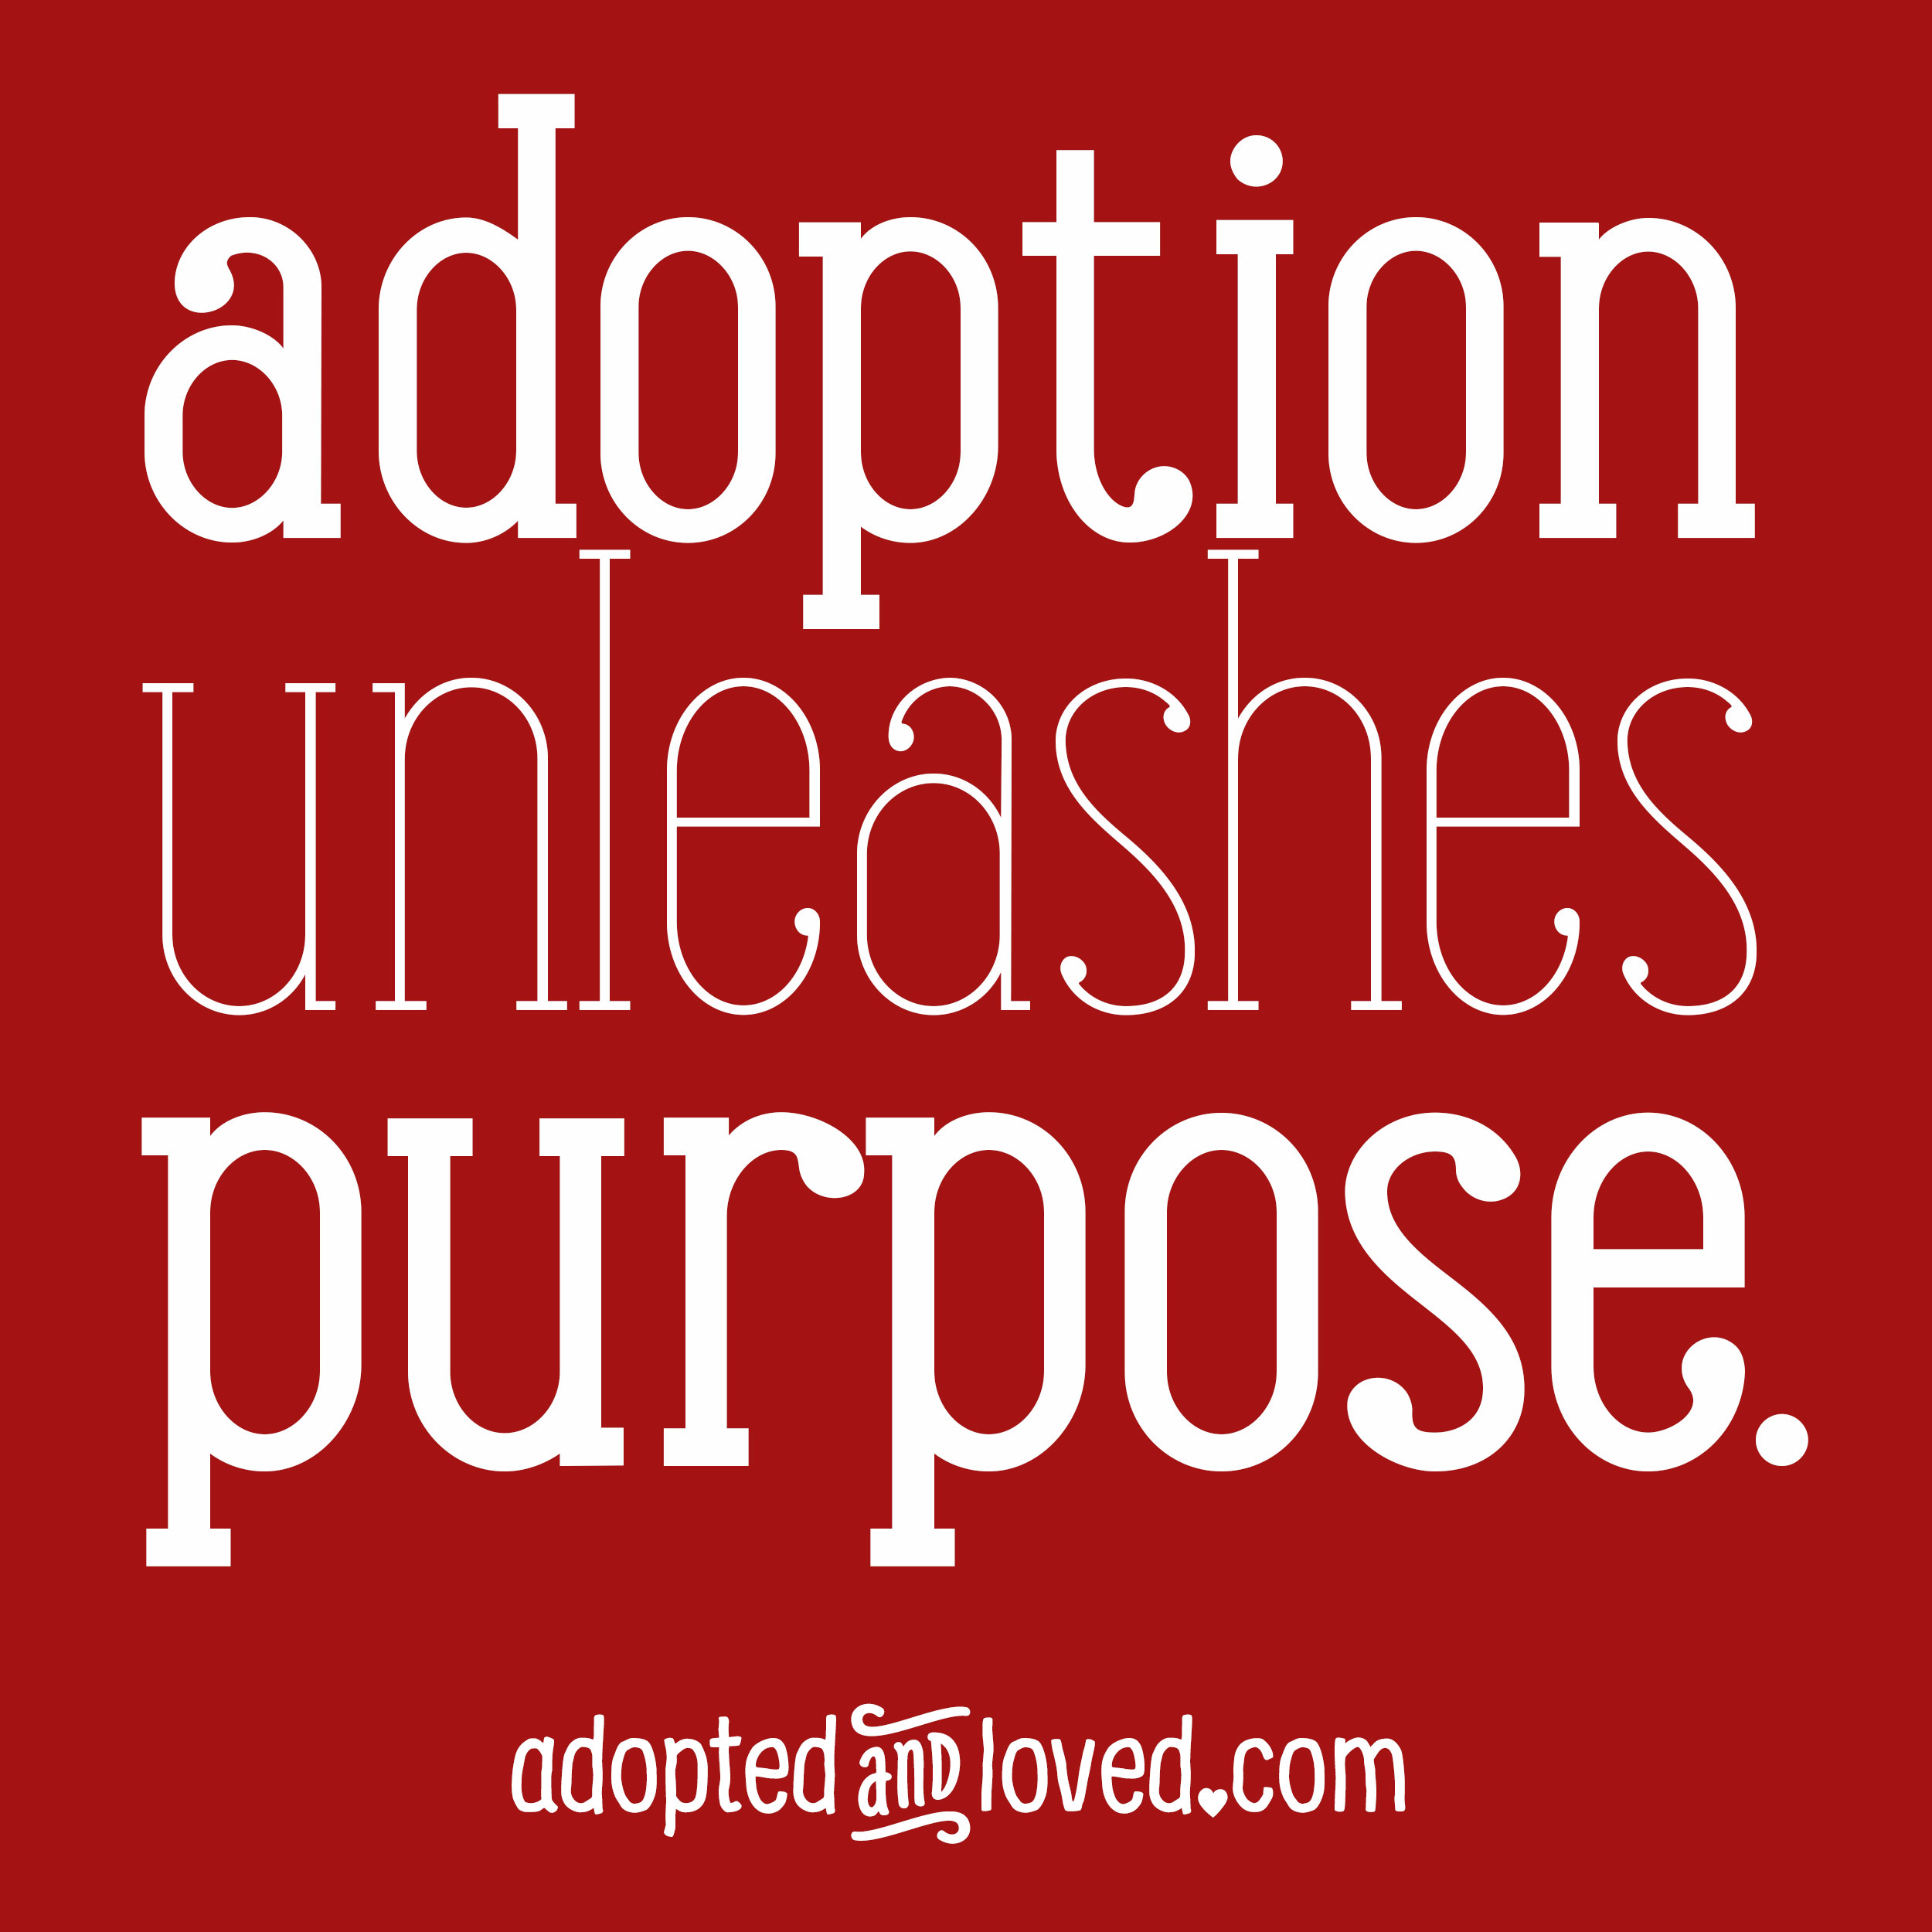 Adoption Unleashes Purpose